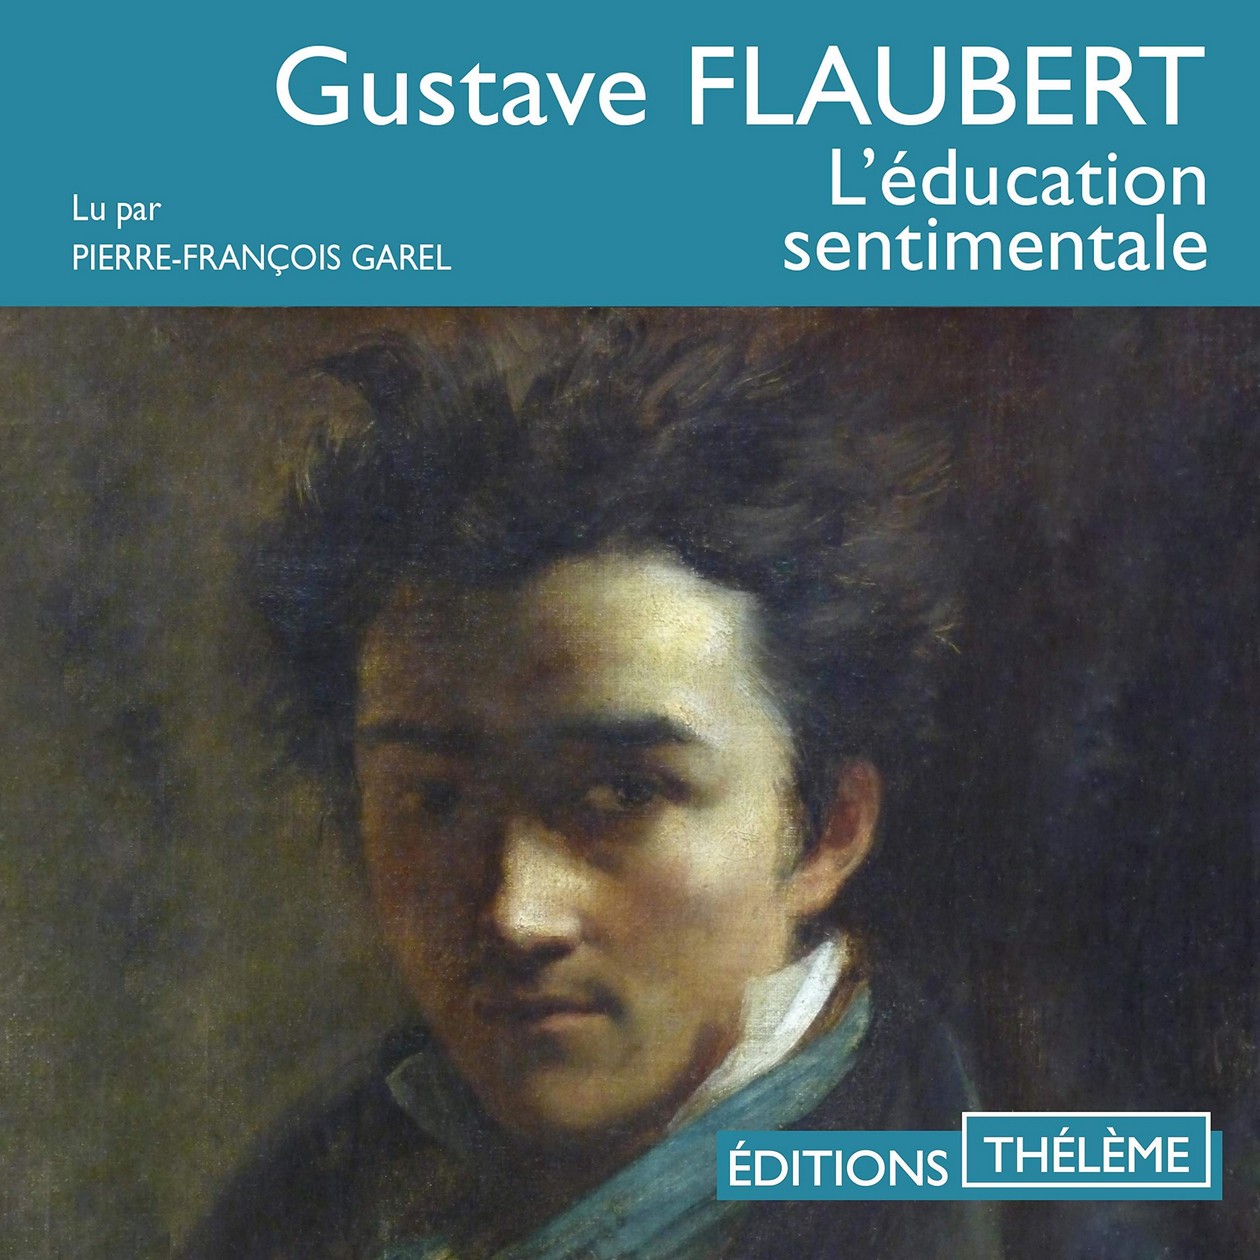 Audiobook / Livre audio : Flaubert, L'éducation sentimentale. Lu par Pierre-François Garel (15h13)